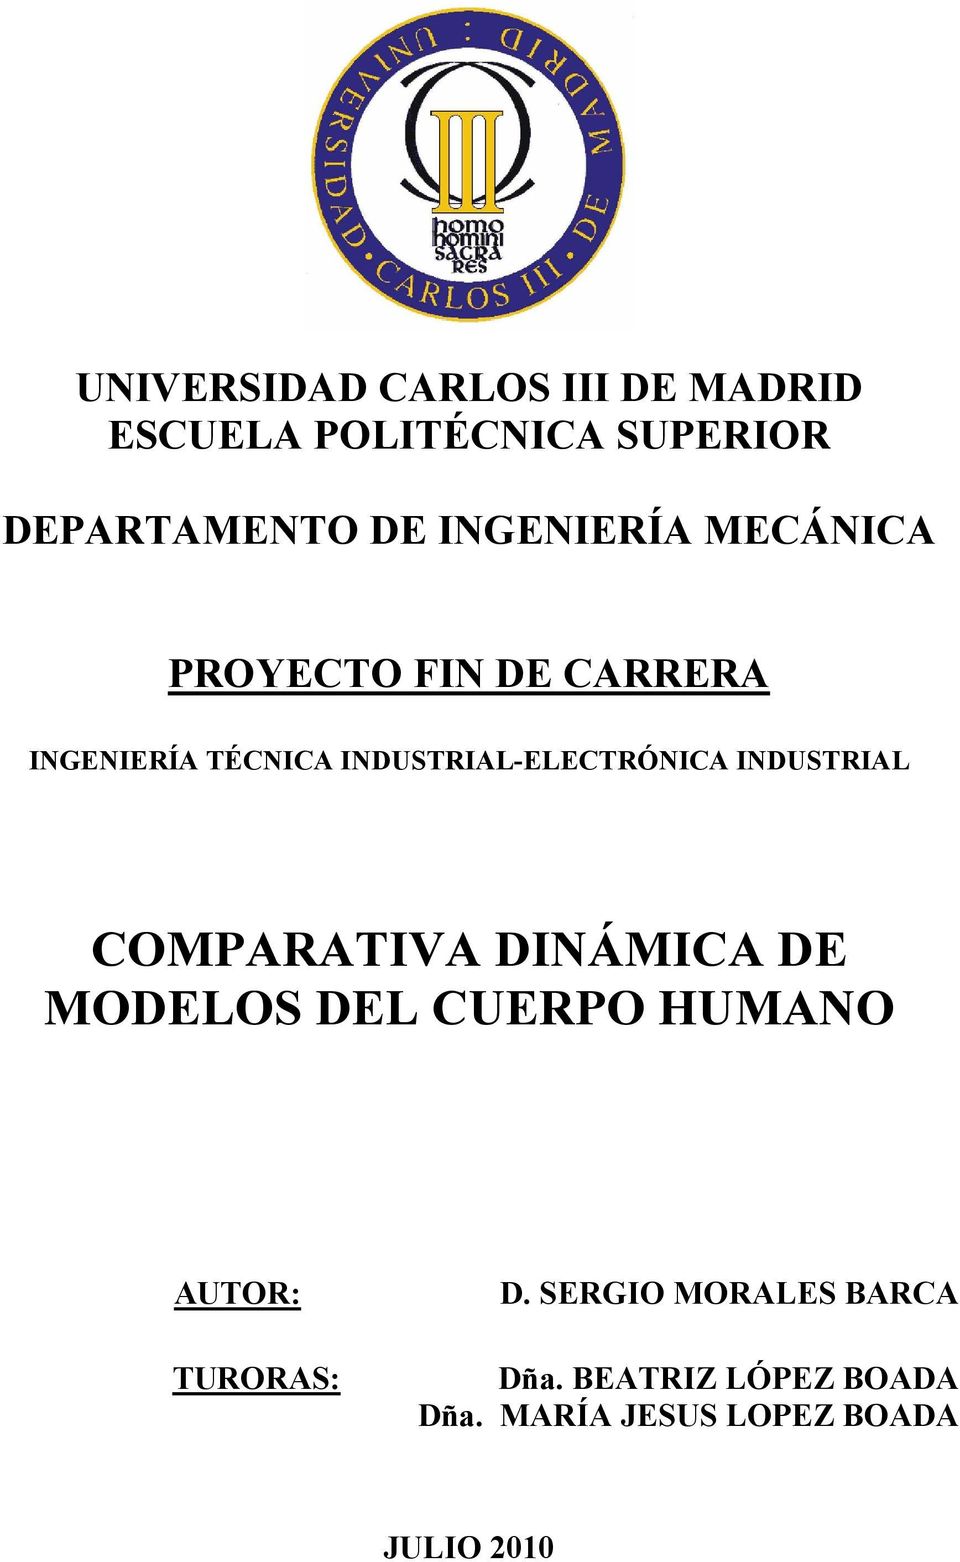 INDUSTRIAL-ELECTRÓNICA INDUSTRIAL COMPARATIVA DINÁMICA DE MODELOS DEL CUERPO